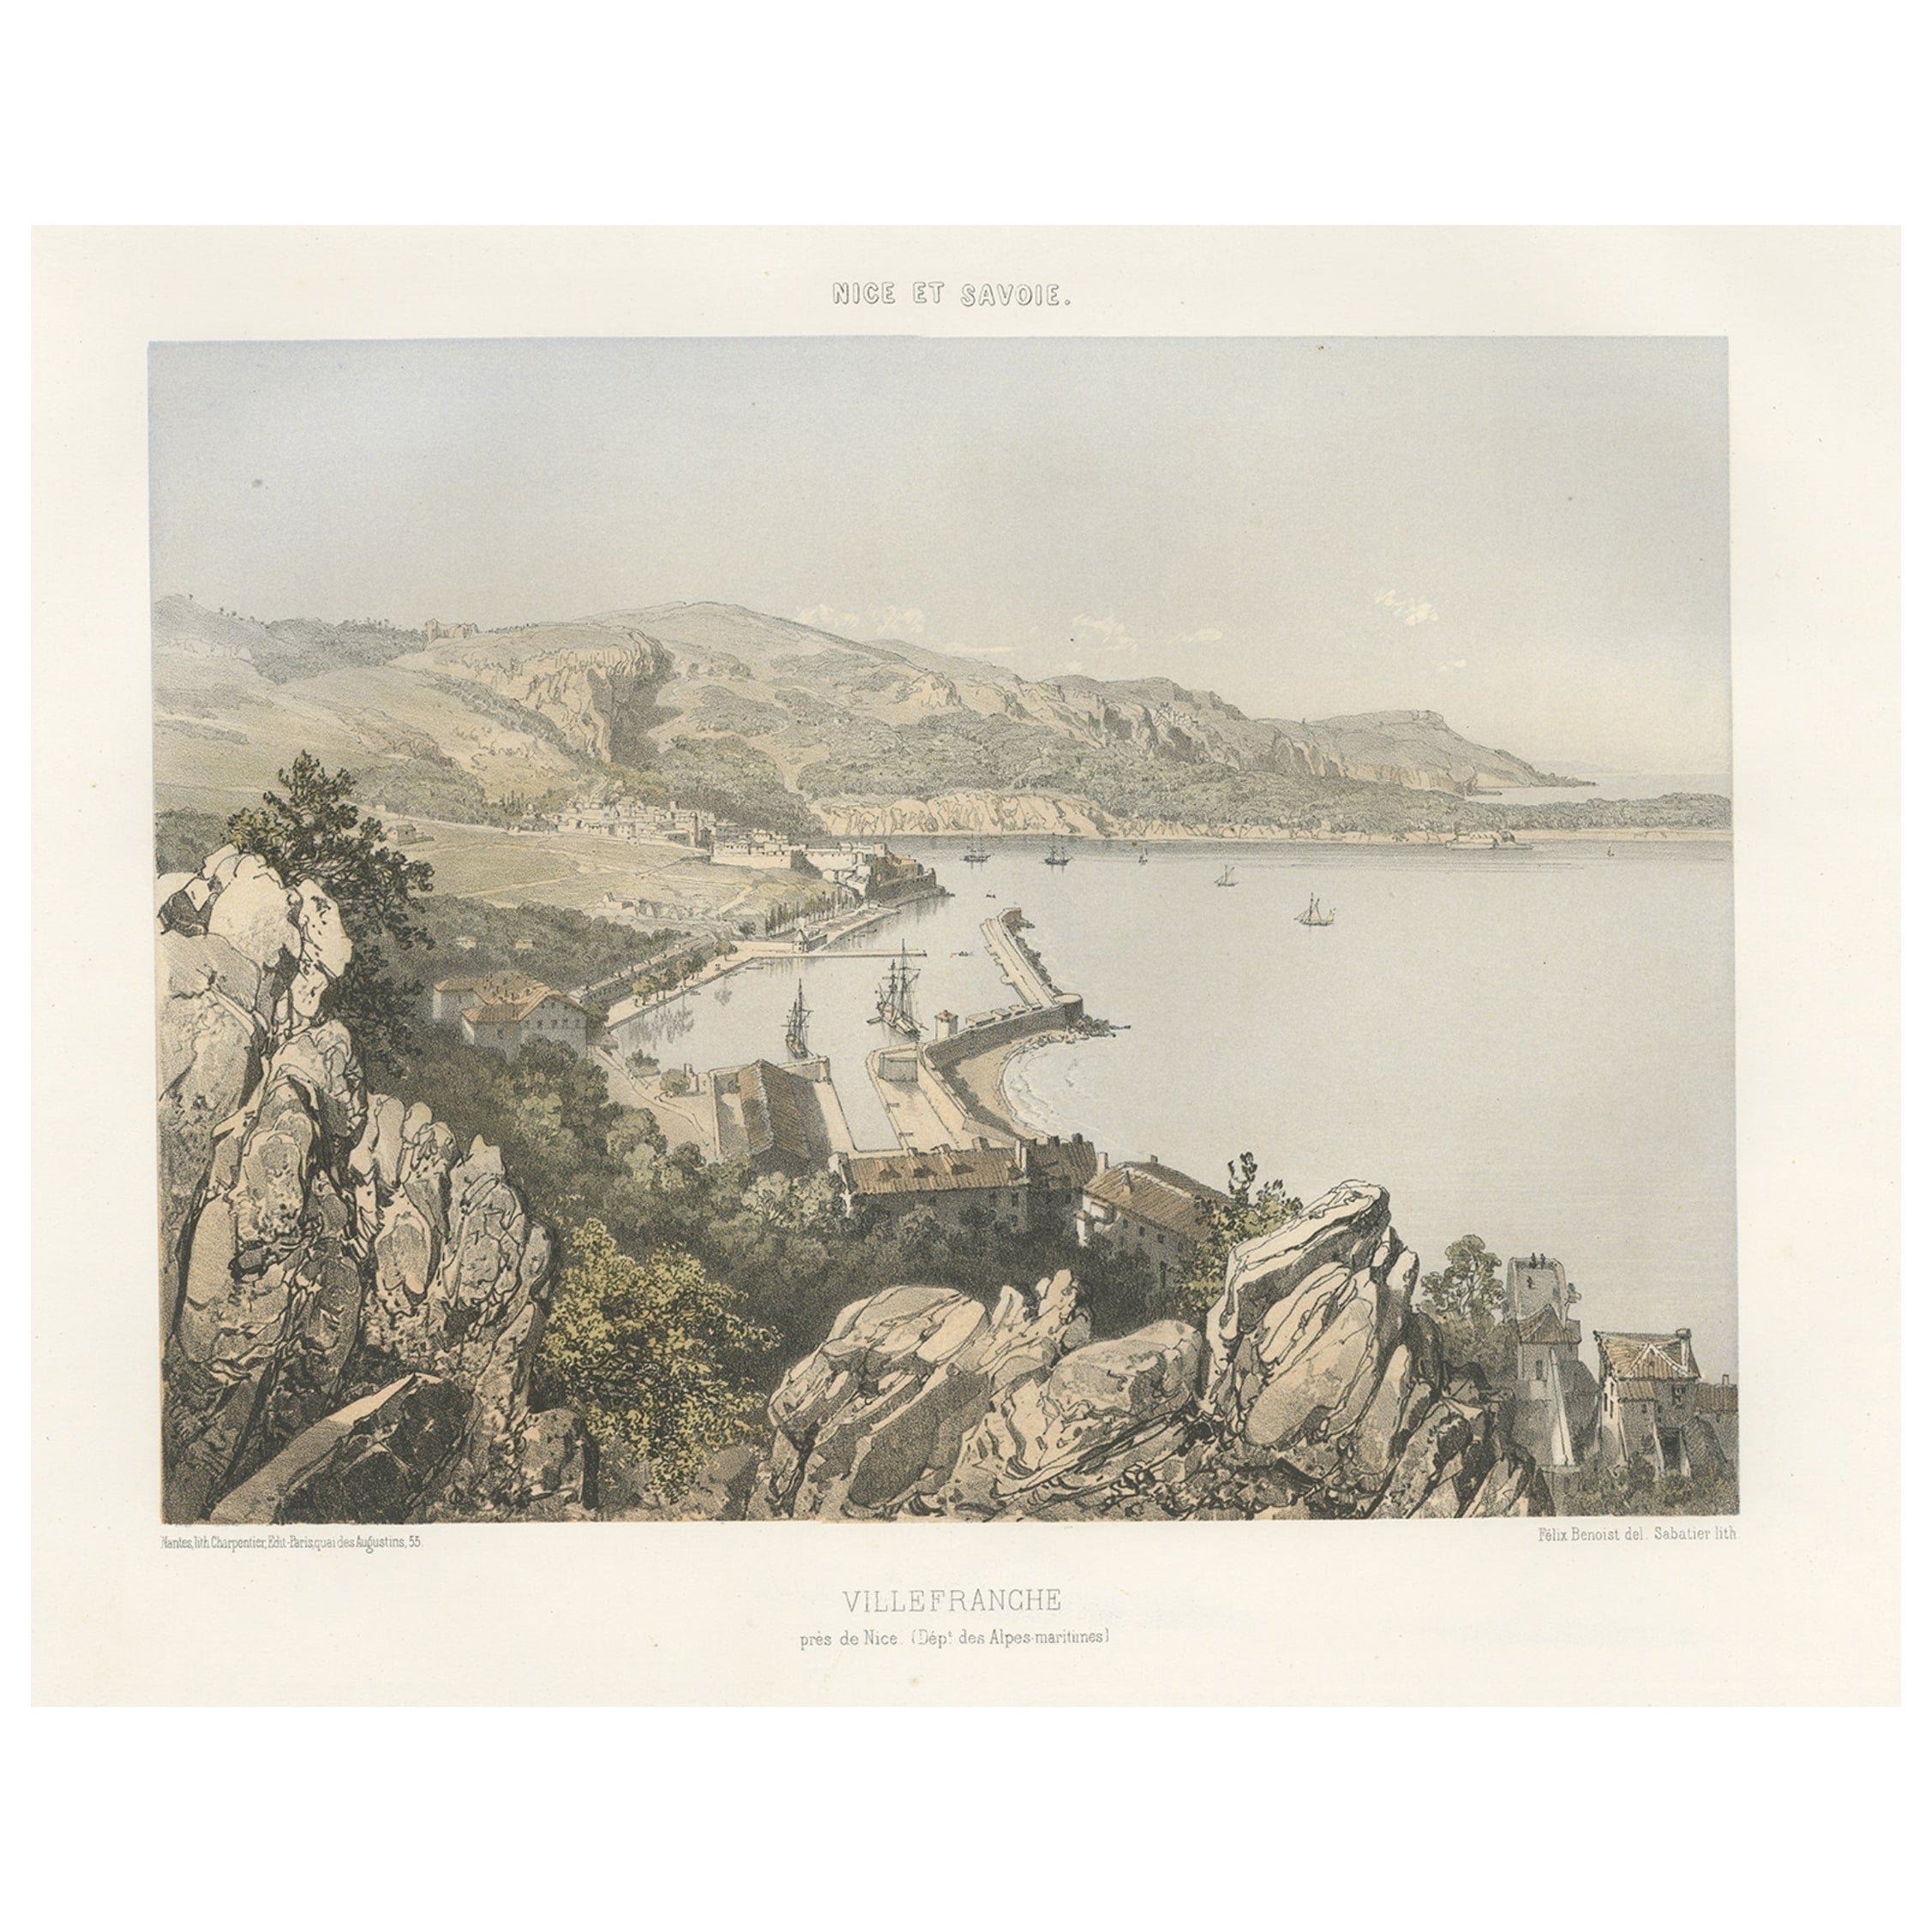 Antiquité de Villefranche dans la région de Nice et de Savoy en France, c.1865